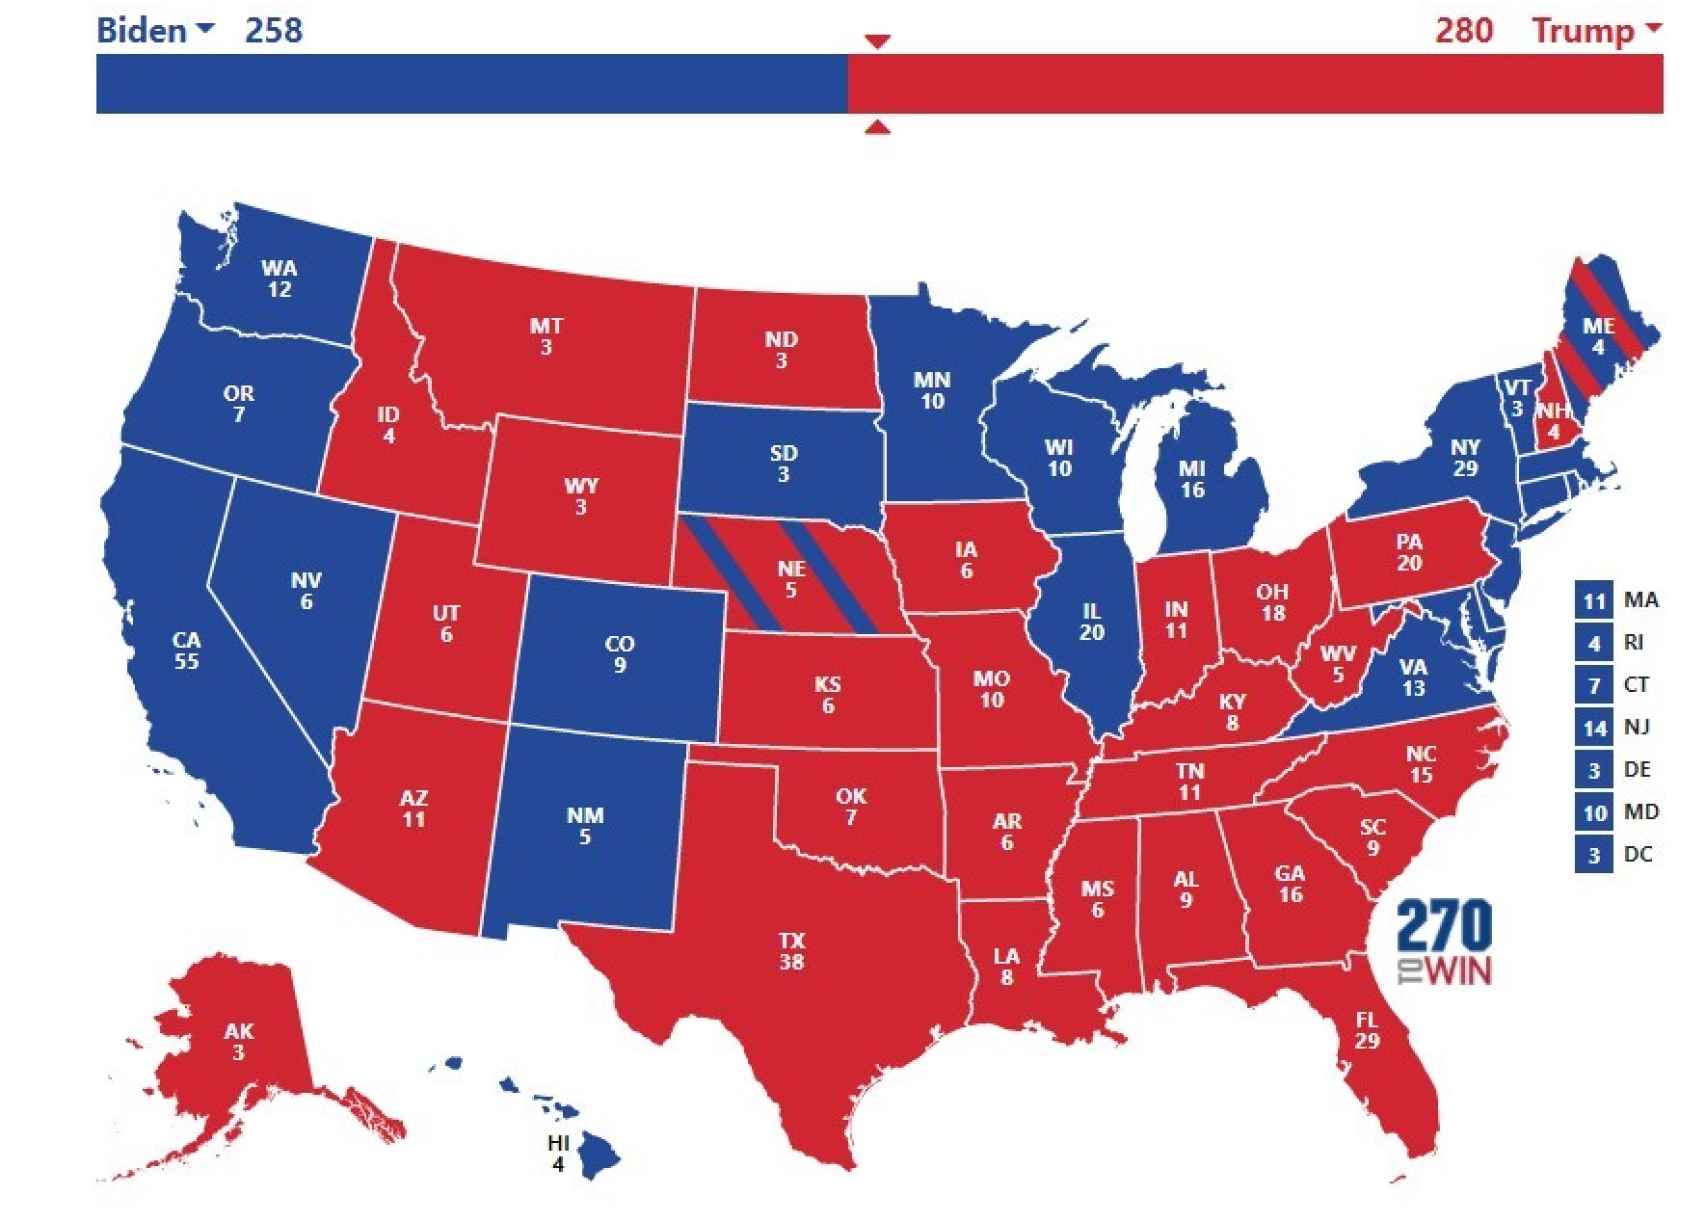 Posible resultado electoral si Trump da la vuelta a las encuestas y consigue los estados clave.